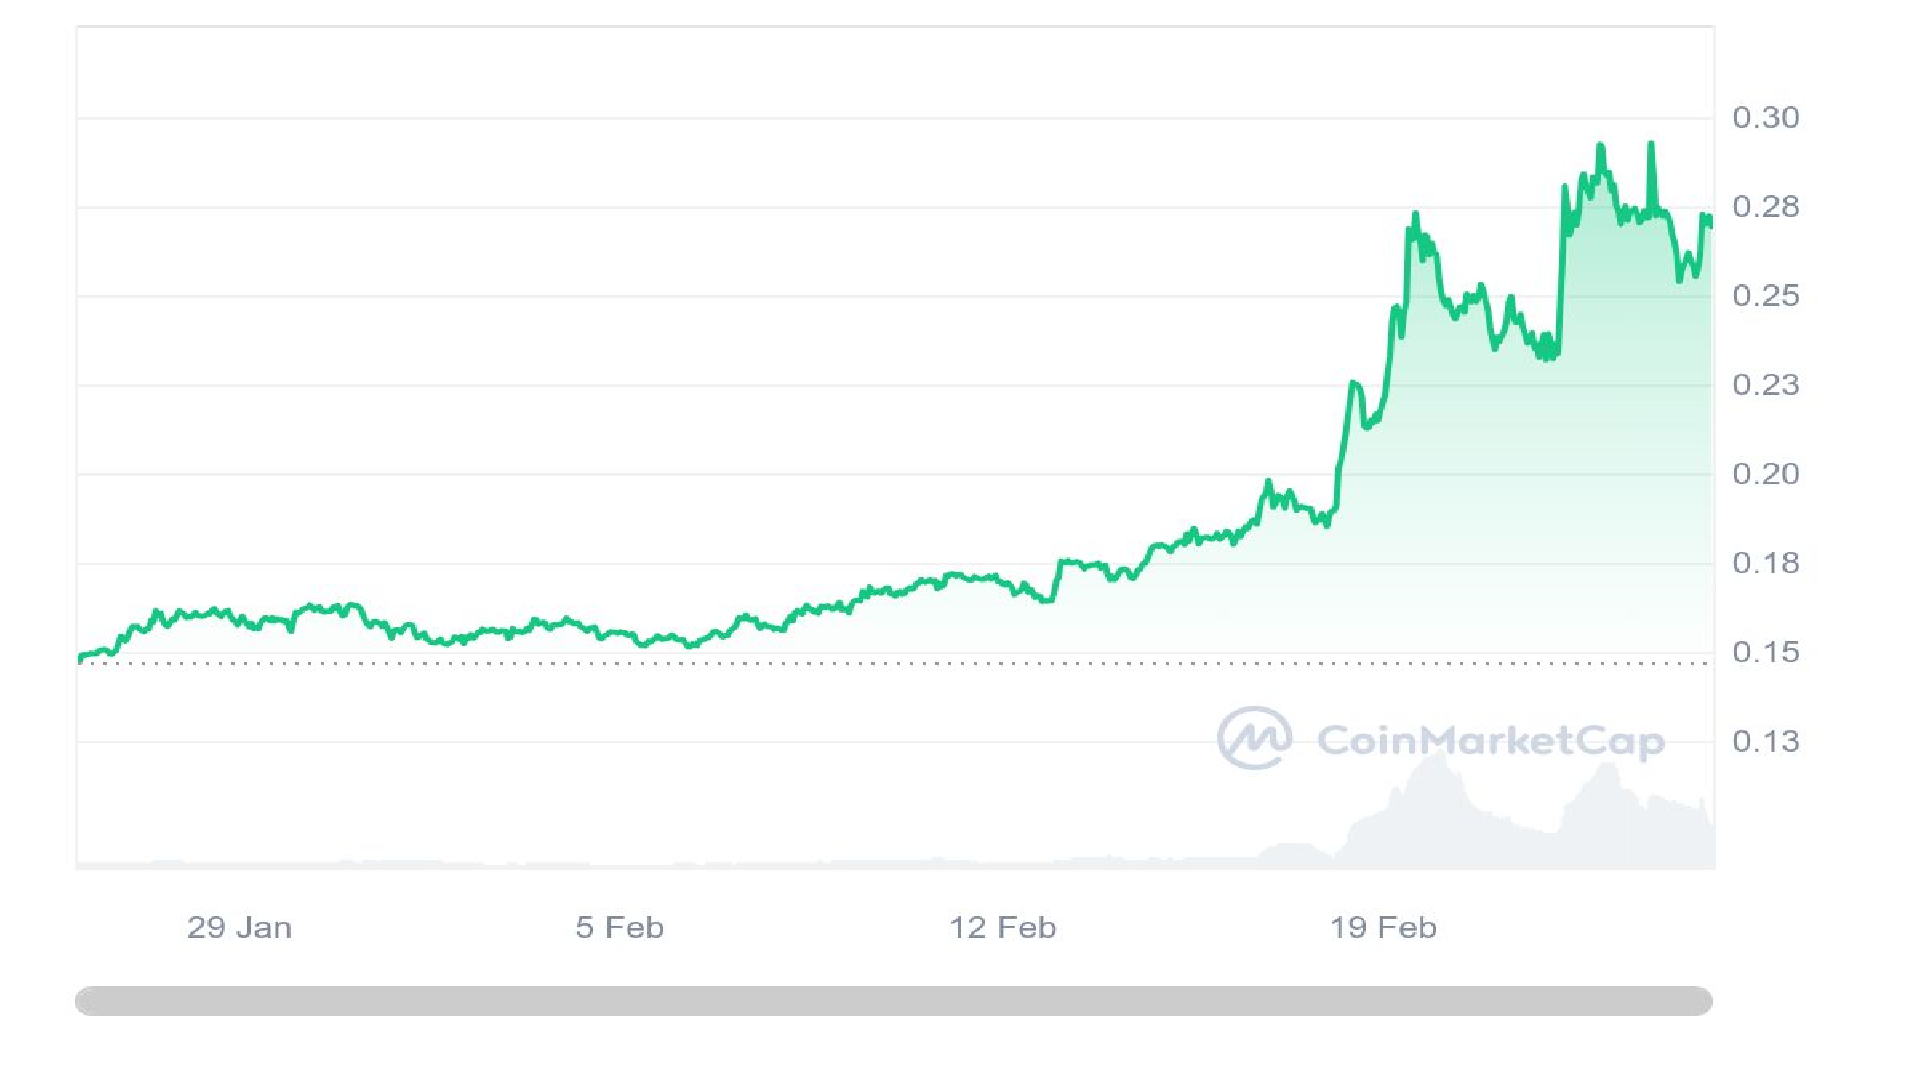 Grafen Crypto-prisprediksjon - Evaluering av $GRT-tokenomikk og markedsinnsikt